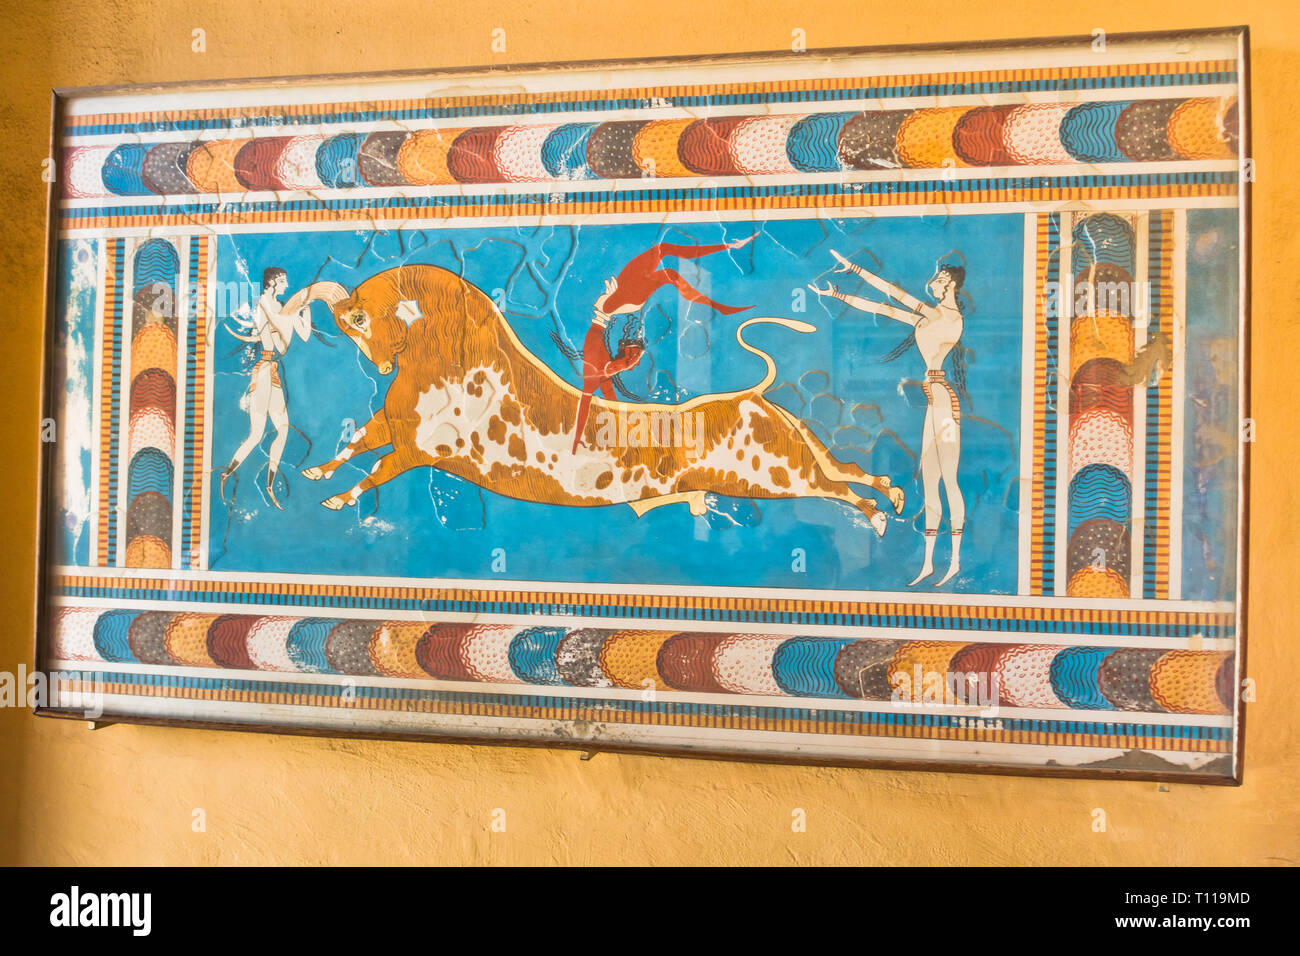 À partir de détails architecturaux et artictic il y a 3500 ans au palais de Knossos, près du port d'Héraklion, île de Crète, Grèce Banque D'Images